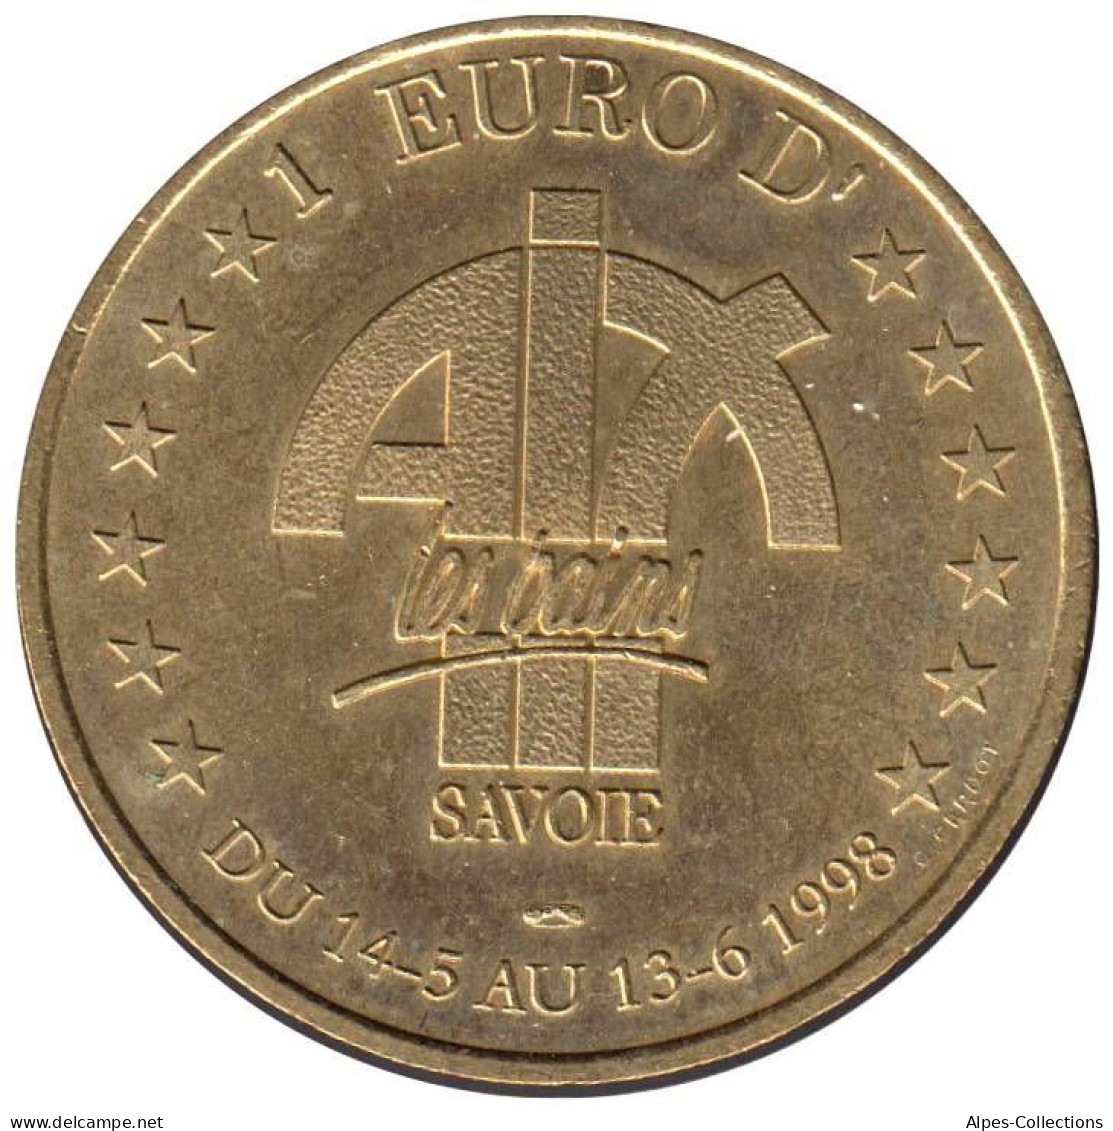 AIX LES BAINS - EU0010.3 - 1 EURO DES VILLES - Réf: T418 - 1998 - Euros Des Villes